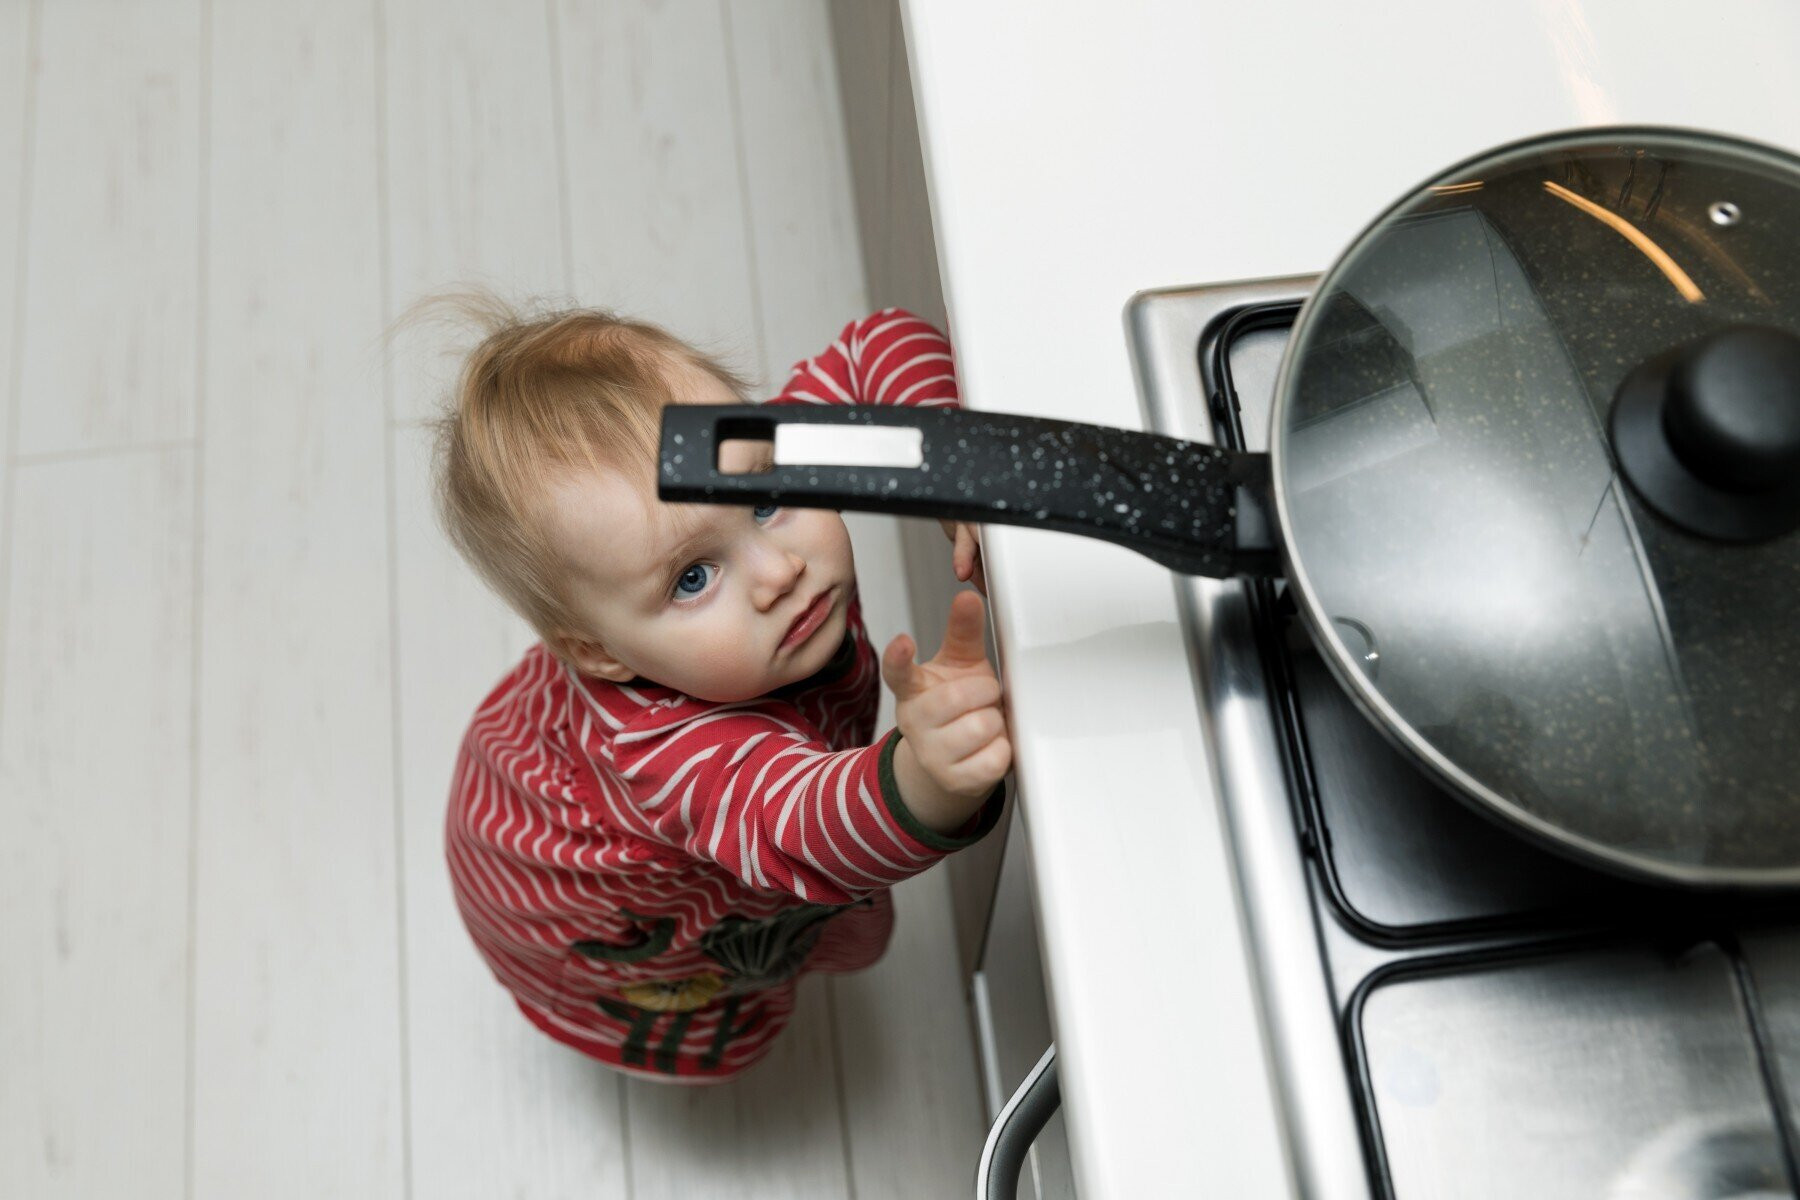 Không nên để trẻ nhỏ và thú cưng đi vào căn bếp khi bạn đang nấu ăn. Đặc biệt, là khi không có người trong bếp. (Ảnh: Children's Mercy Kansas City)